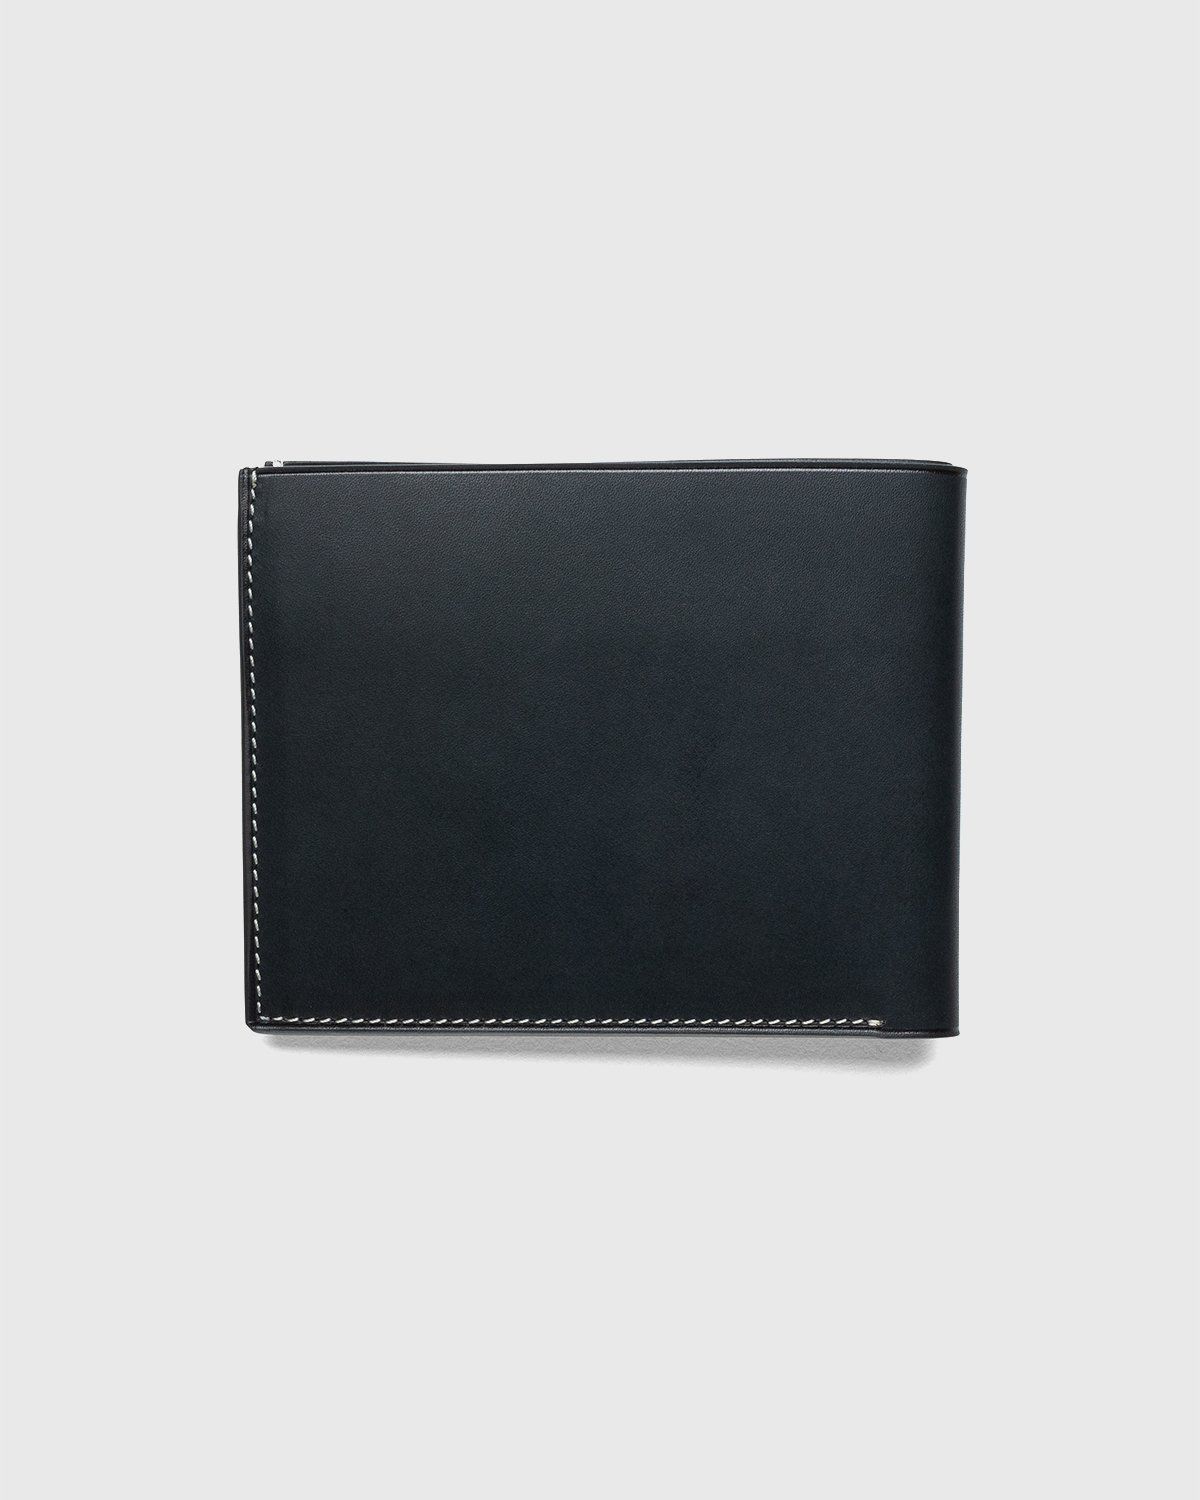 Jil Sander – Pocket Wallet Black - Wallets - Black - Image 2